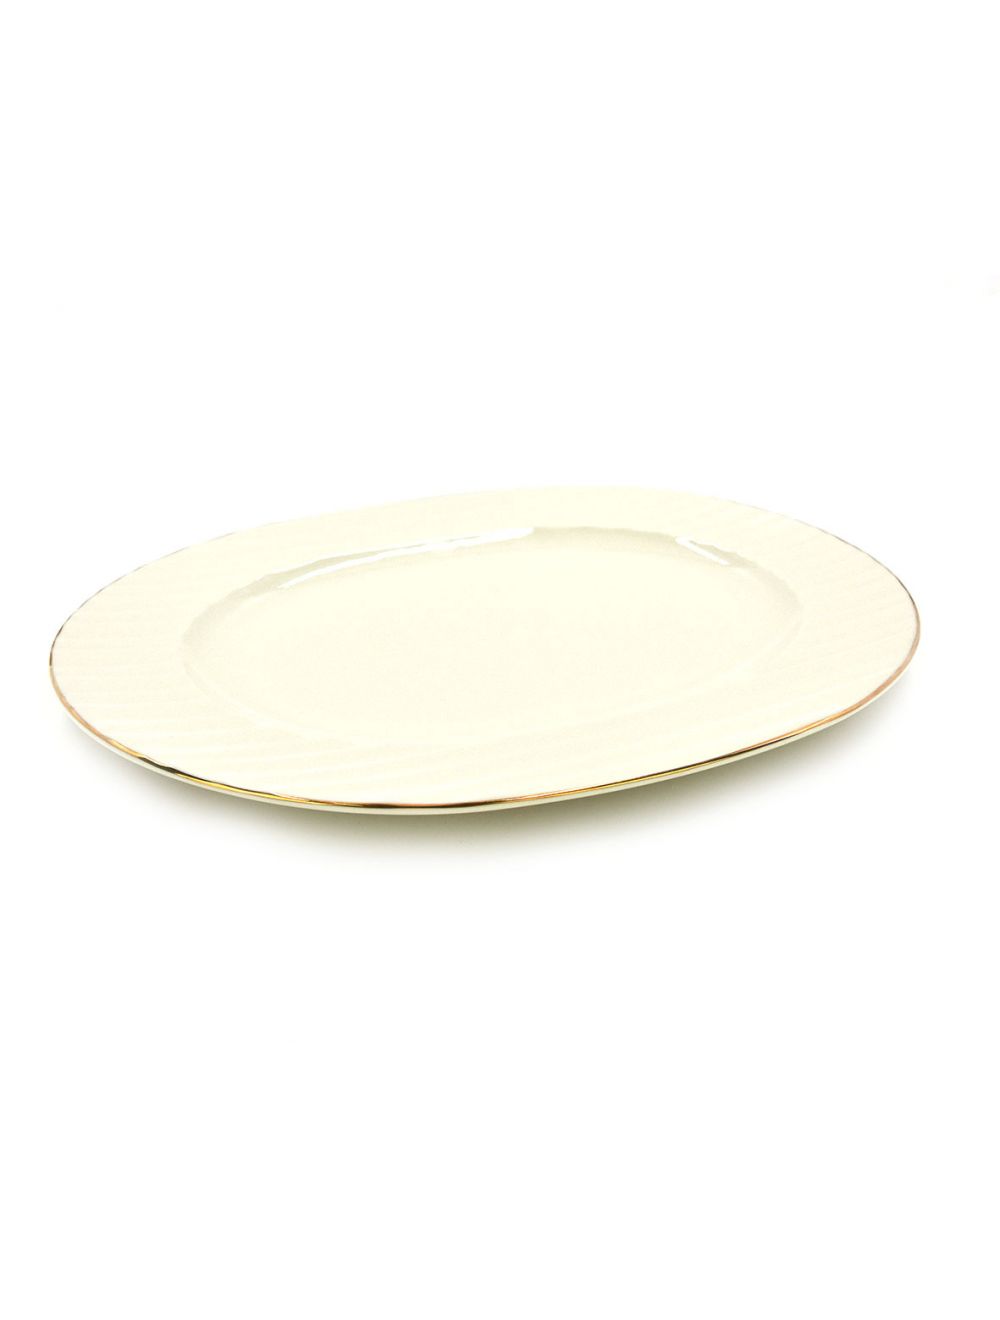 Qualitier Oval Platter White-Gold 34 cm